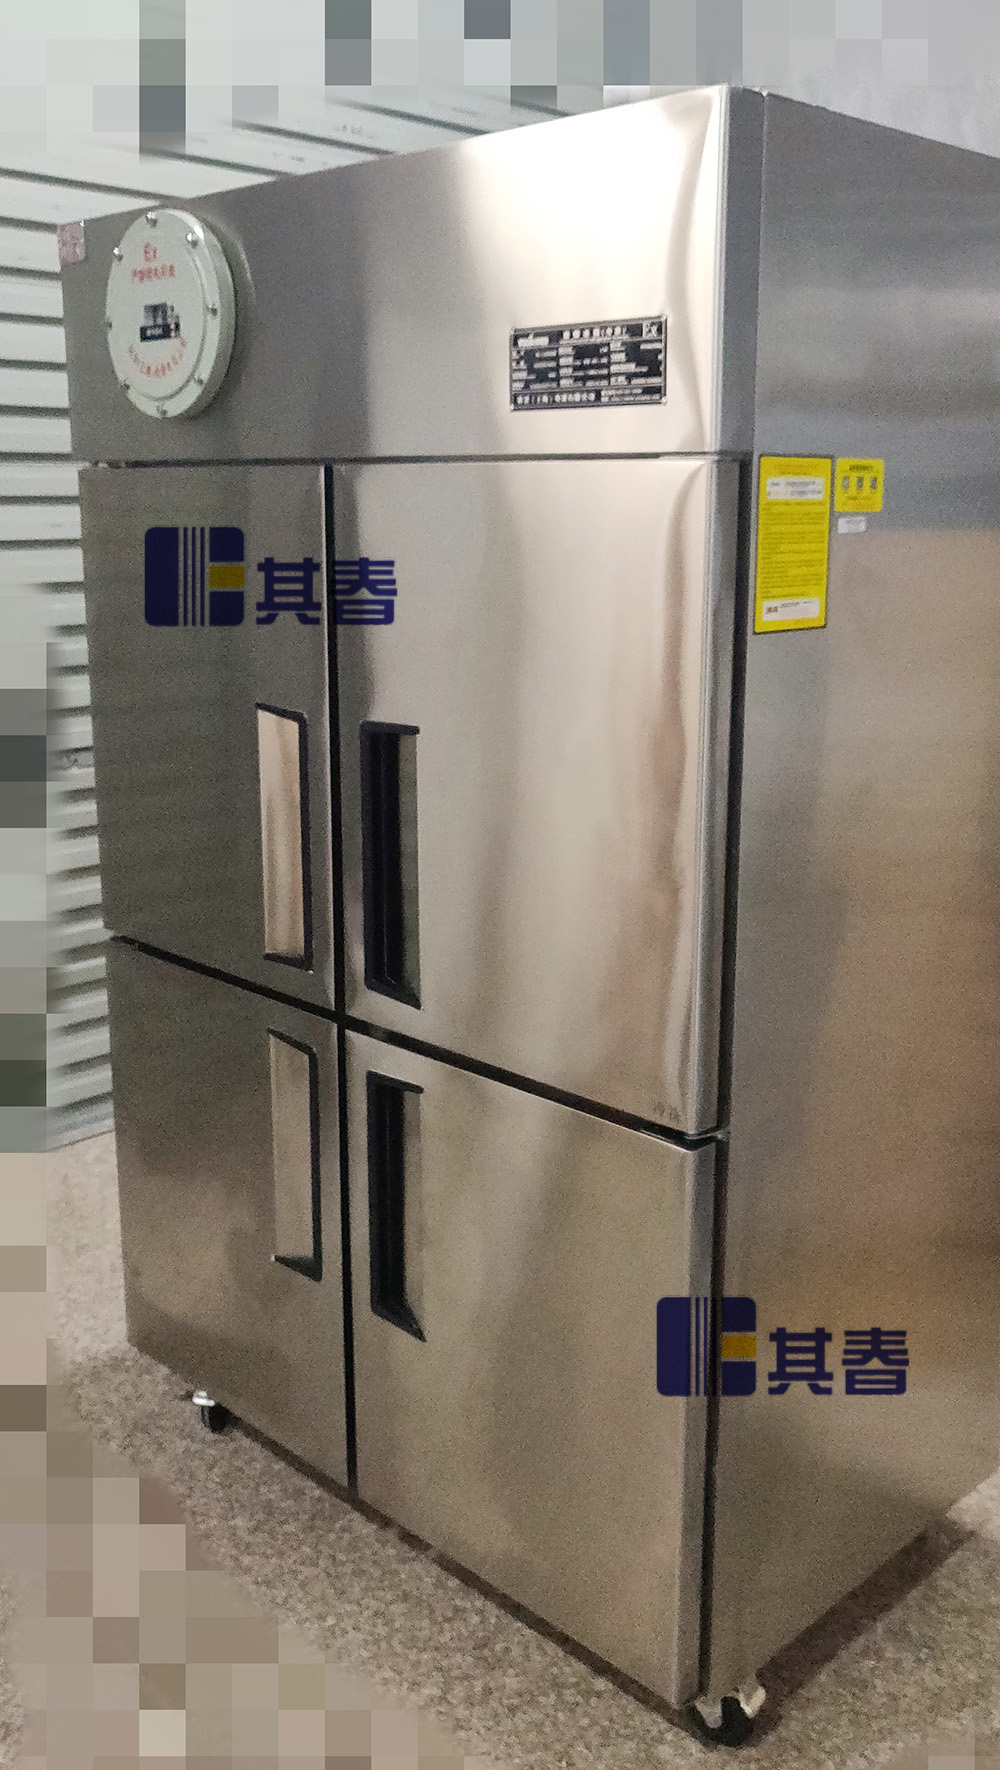 冷藏冷凍防爆四門冰箱不銹鋼定做BL-1020CD